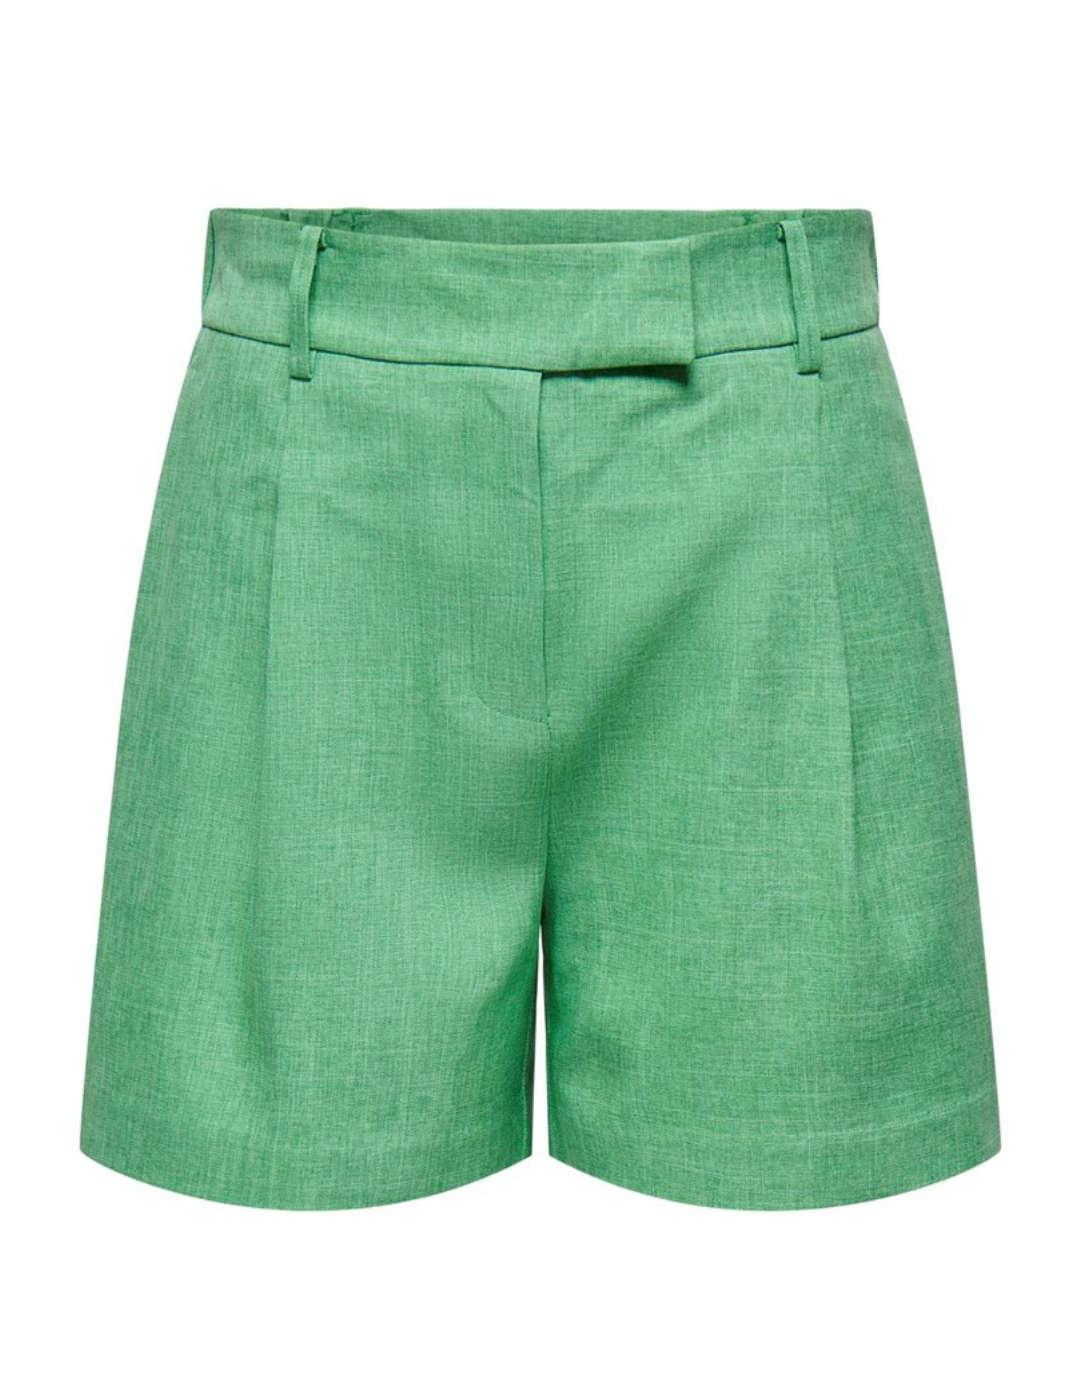 Shorts corto Only de pinzas color verde para mujer